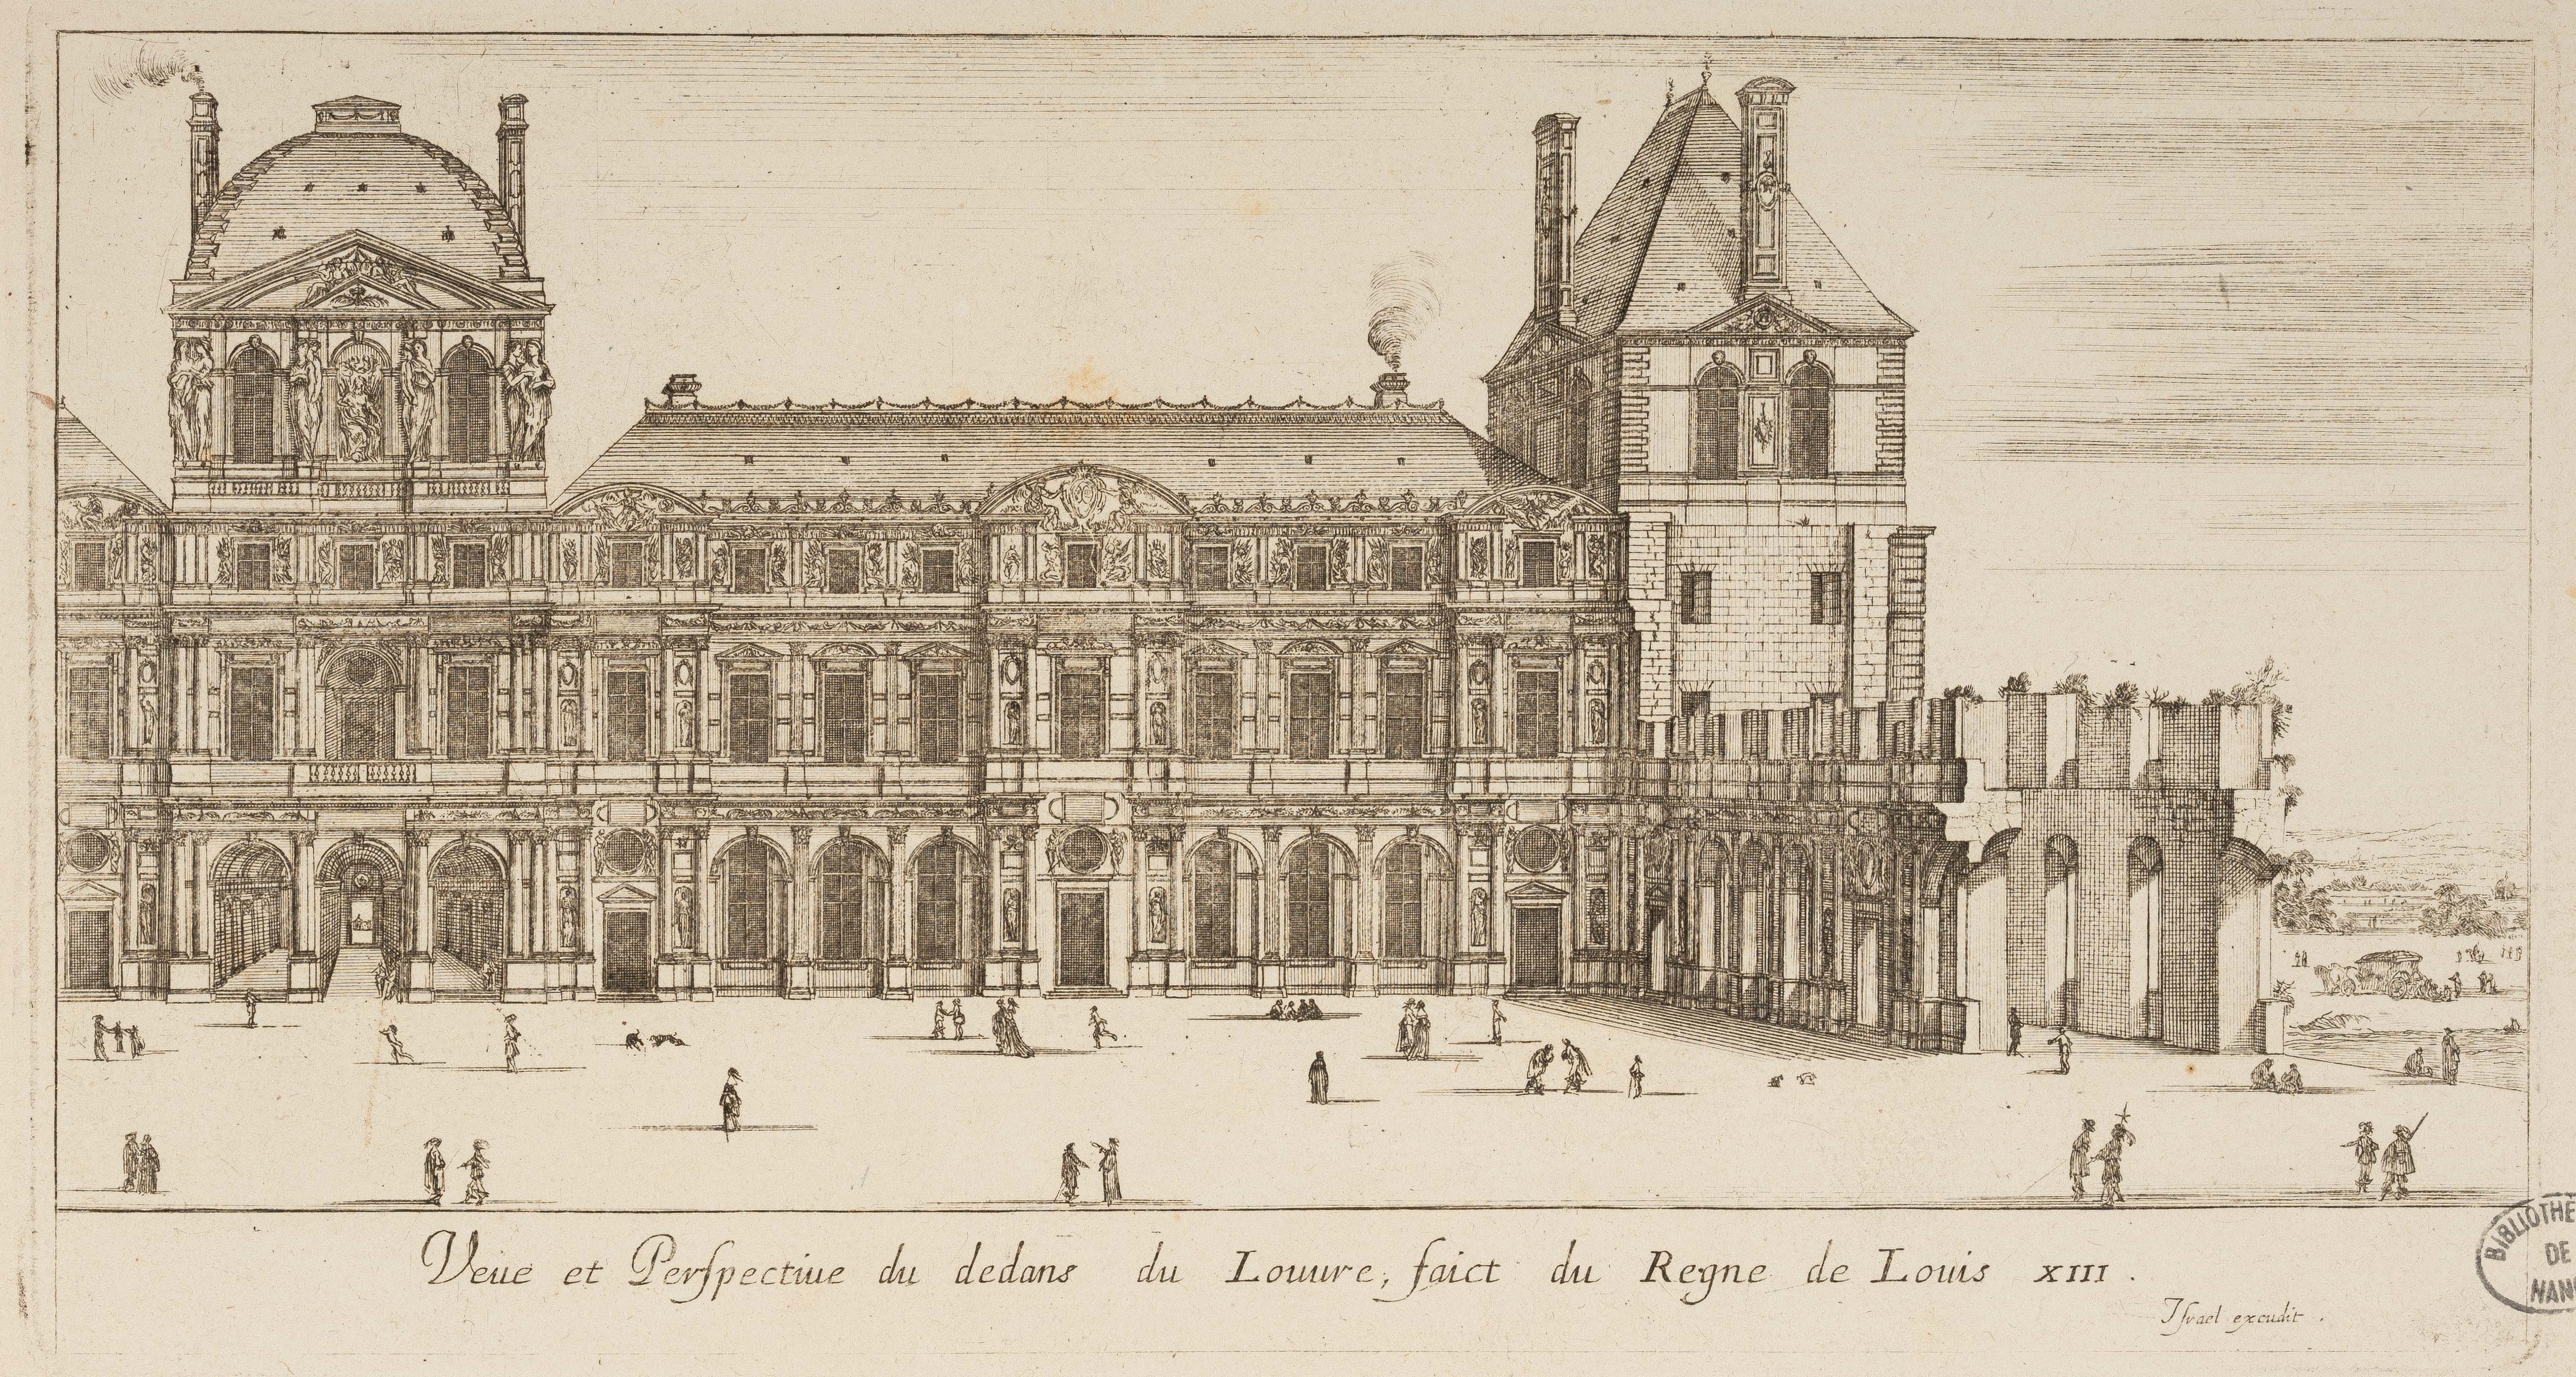 Israël Silvestre : Veue et Perspective du dedans du Louvre, faict du Regne de Louis XIII.